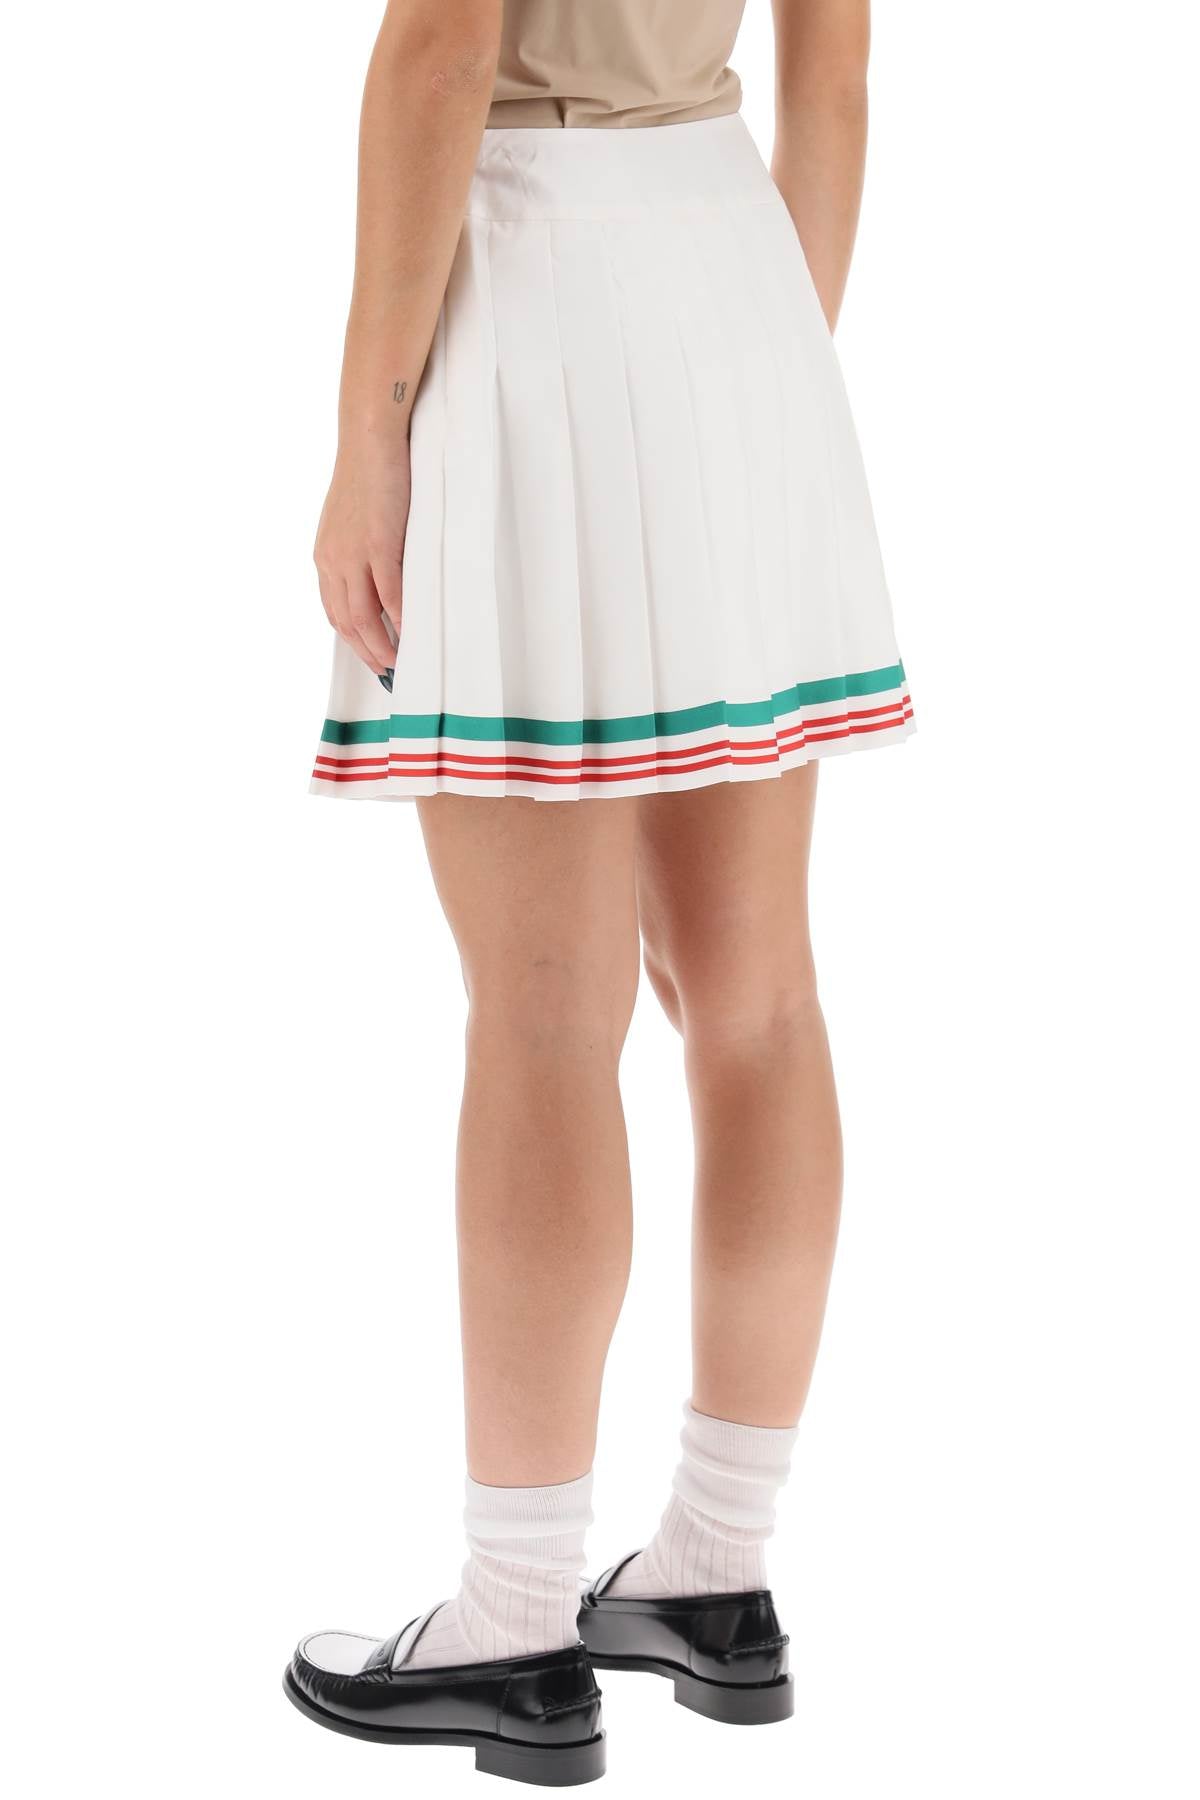 女性网球原色迷你裙 - 褶皱的丝绸布料搭配条纹装饰